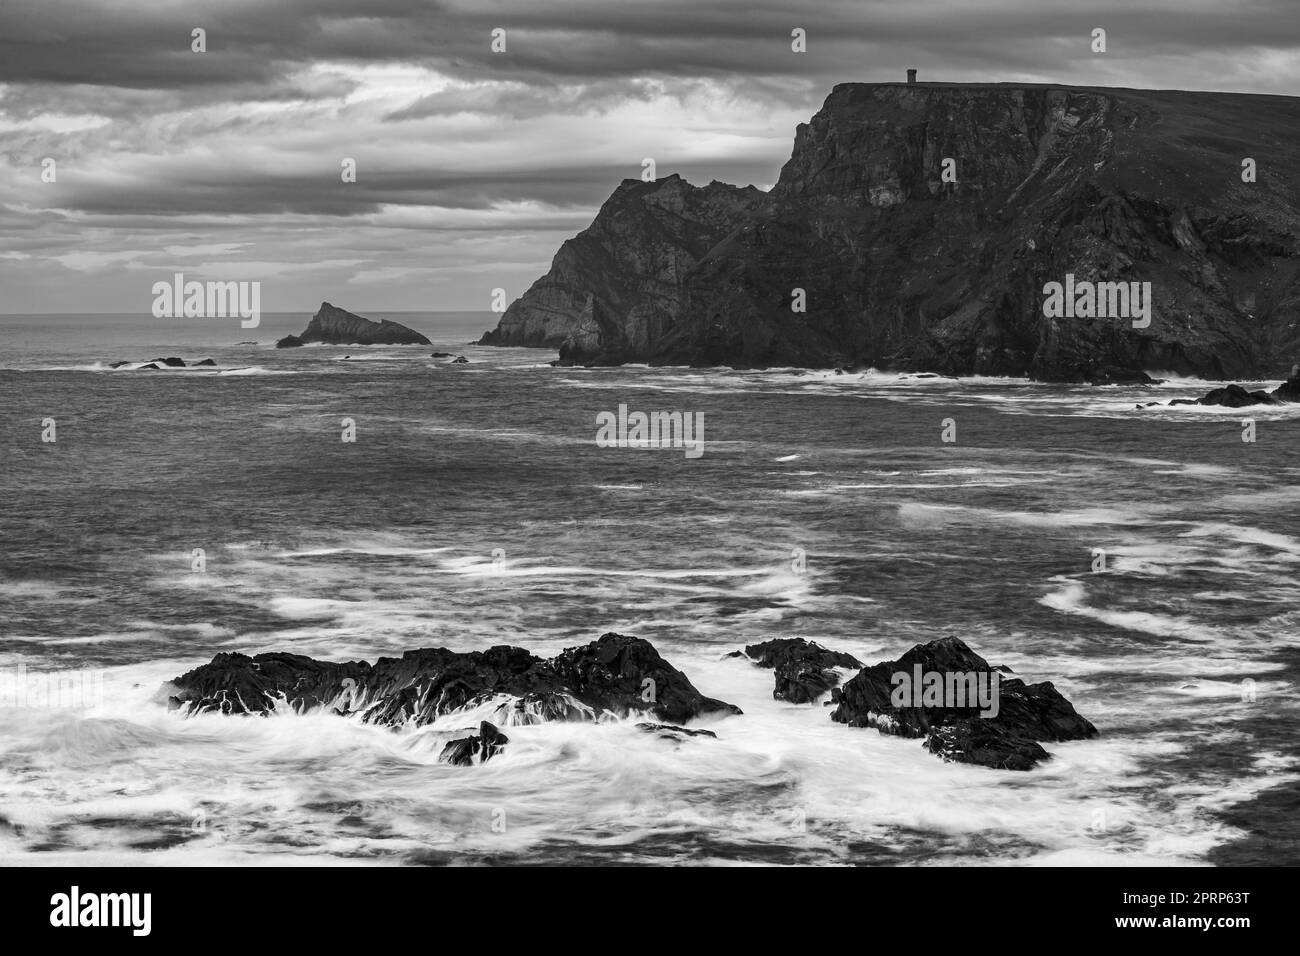 La falaise et la côte d'Irlande Banque D'Images